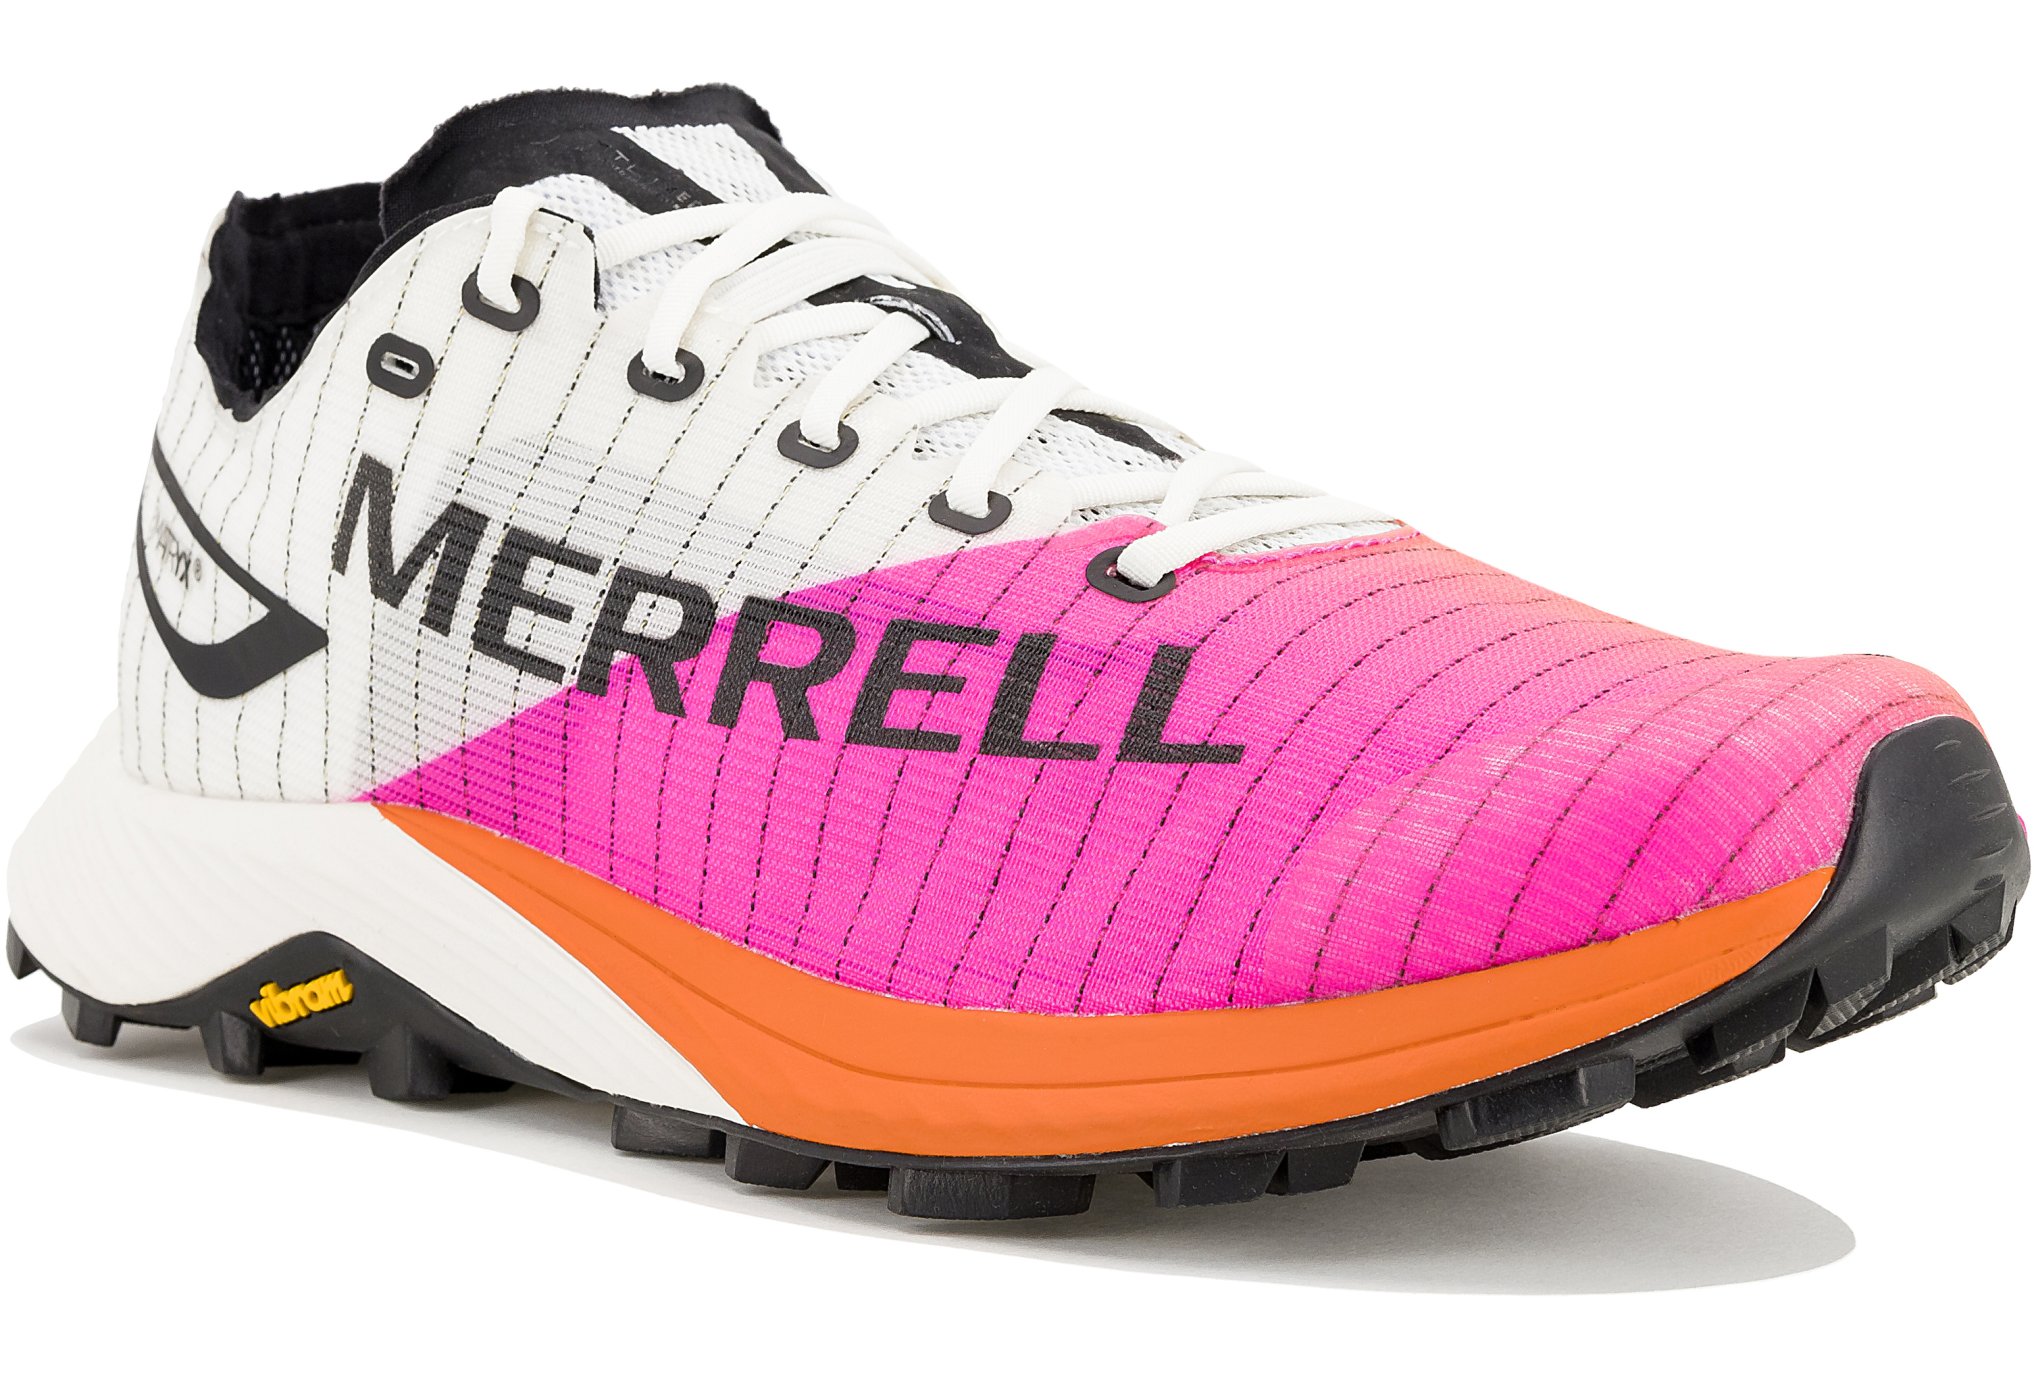 Merrell MTL Long Sky 2 Matryx M Chaussures homme